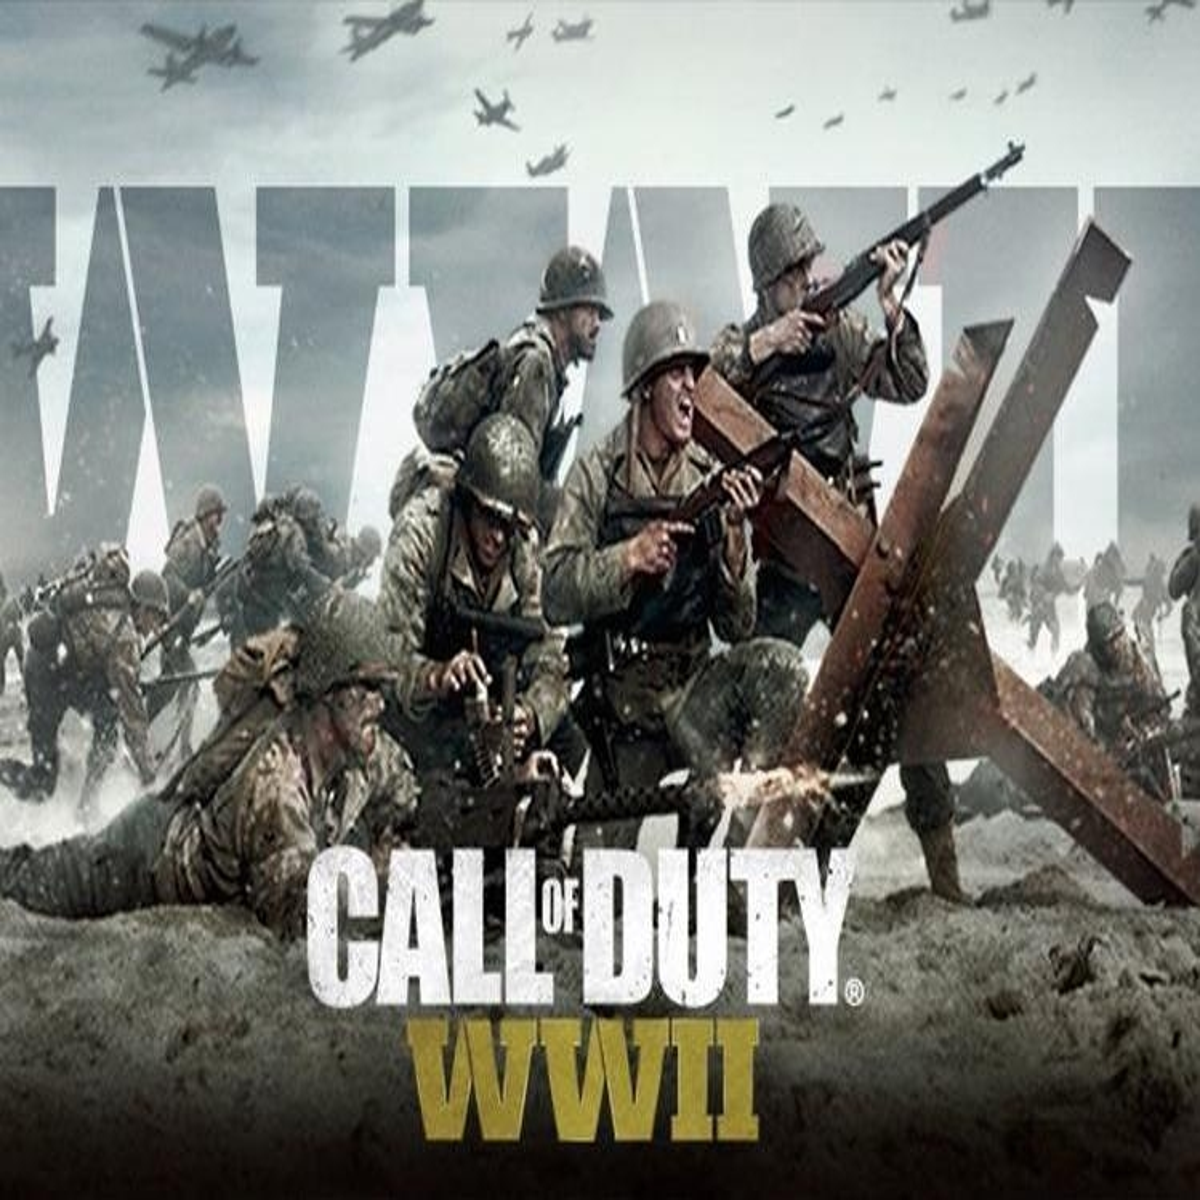 Aproximam-se tempos difíceis Call of Duty: WWII está a chegar